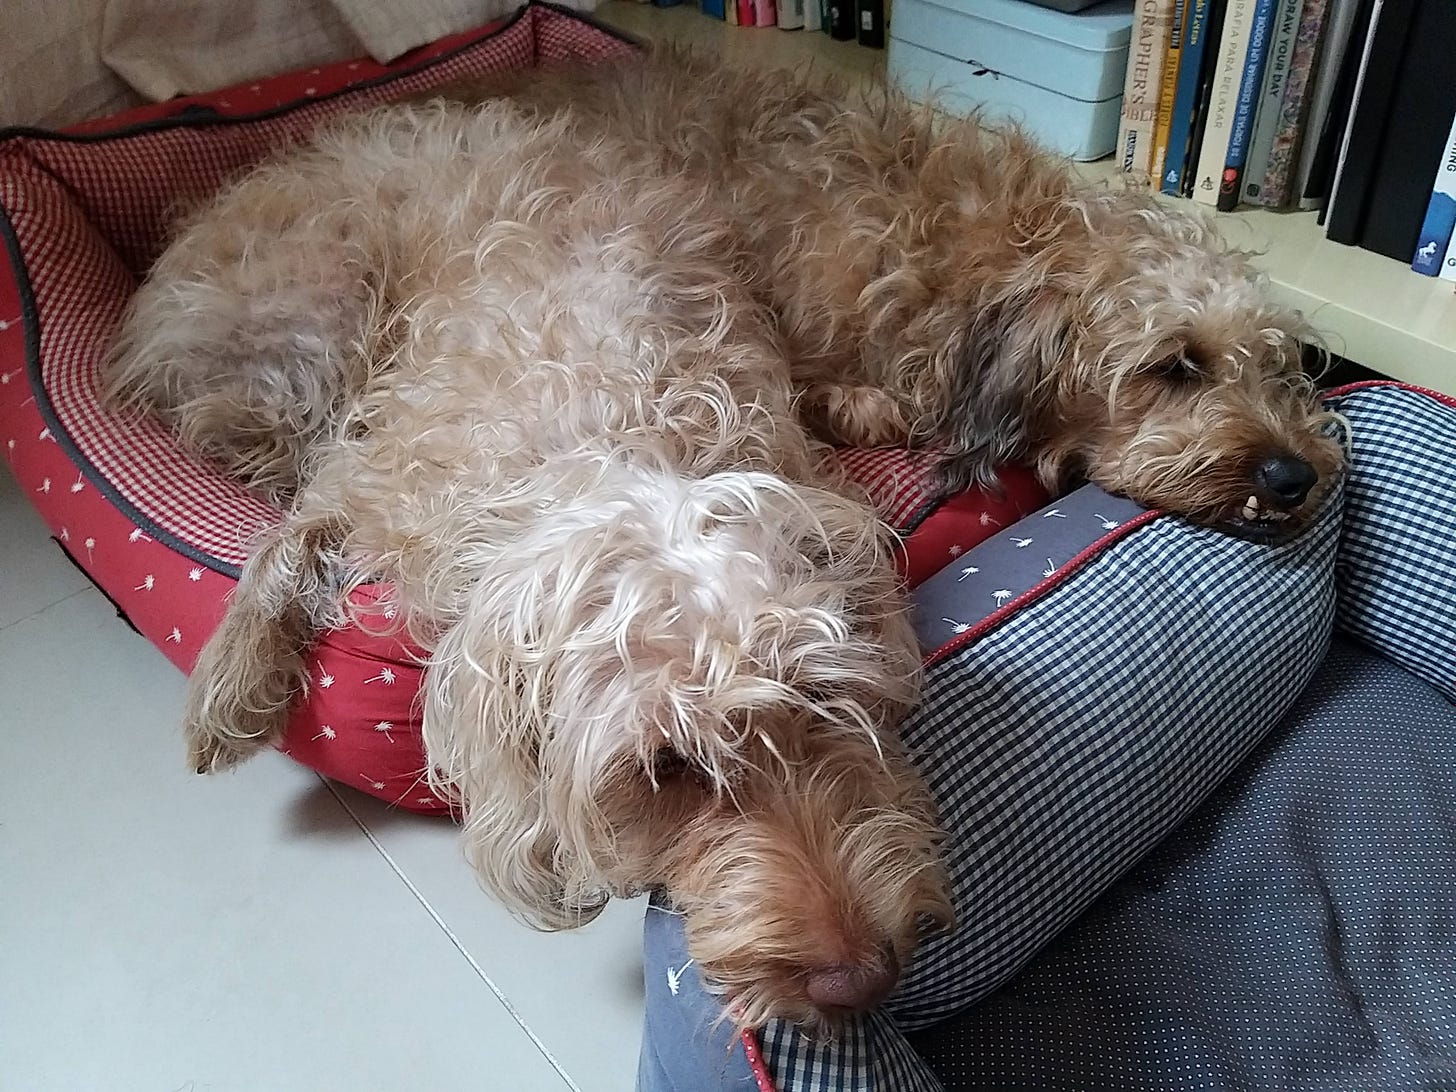 Dois cachorros sem raça definida e pelo caramelo e bege bagunçado dividindo a mesma caminha de pano vermelha